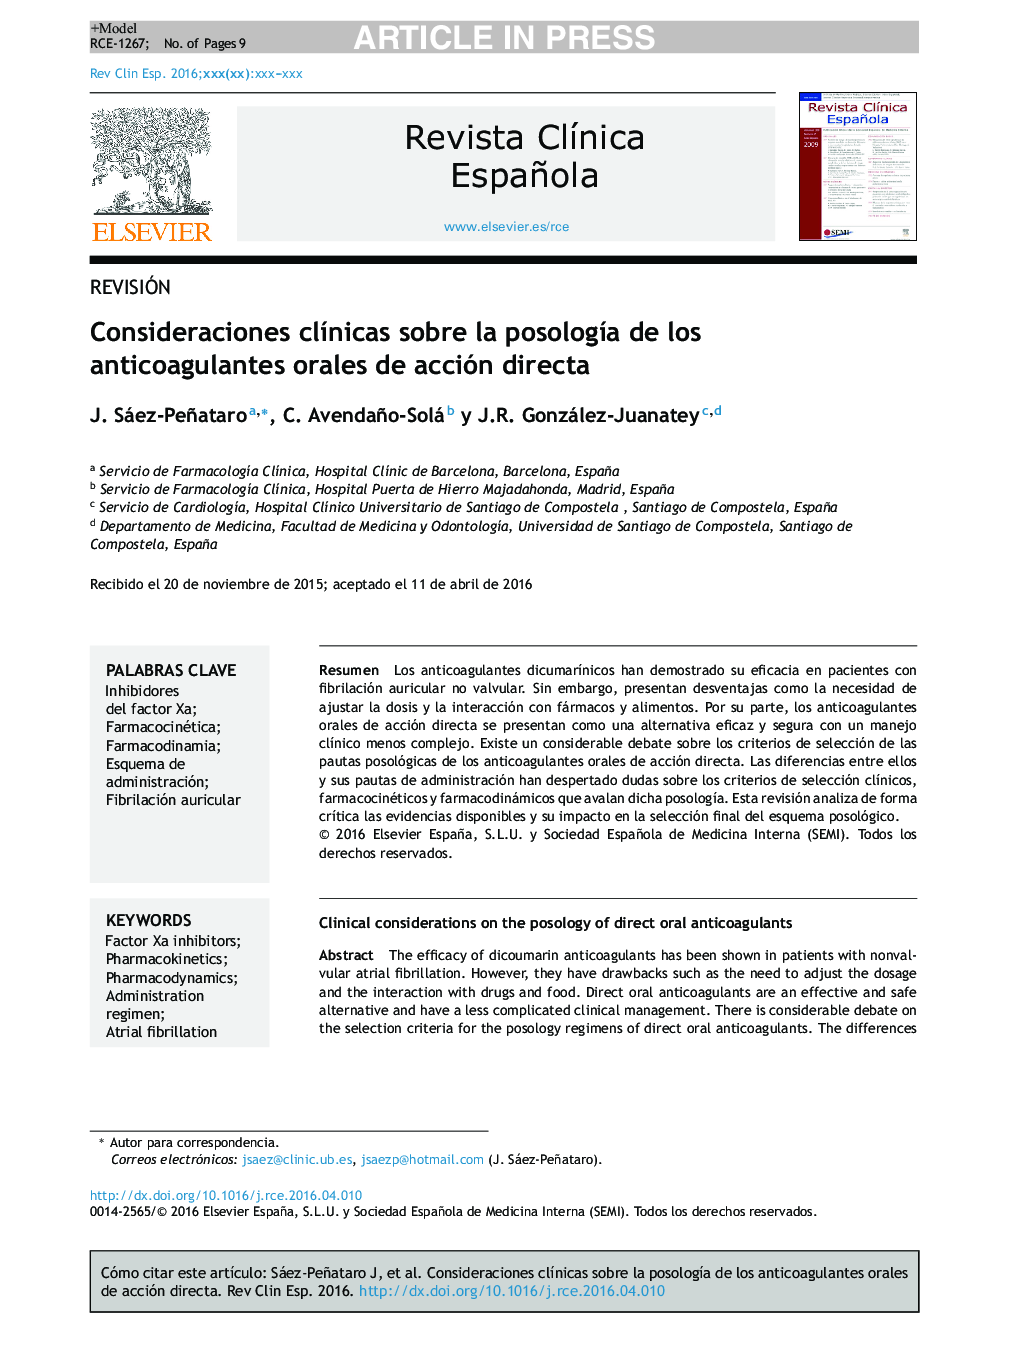 Consideraciones clÃ­nicas sobre la posologÃ­a de los anticoagulantes orales de acción directa